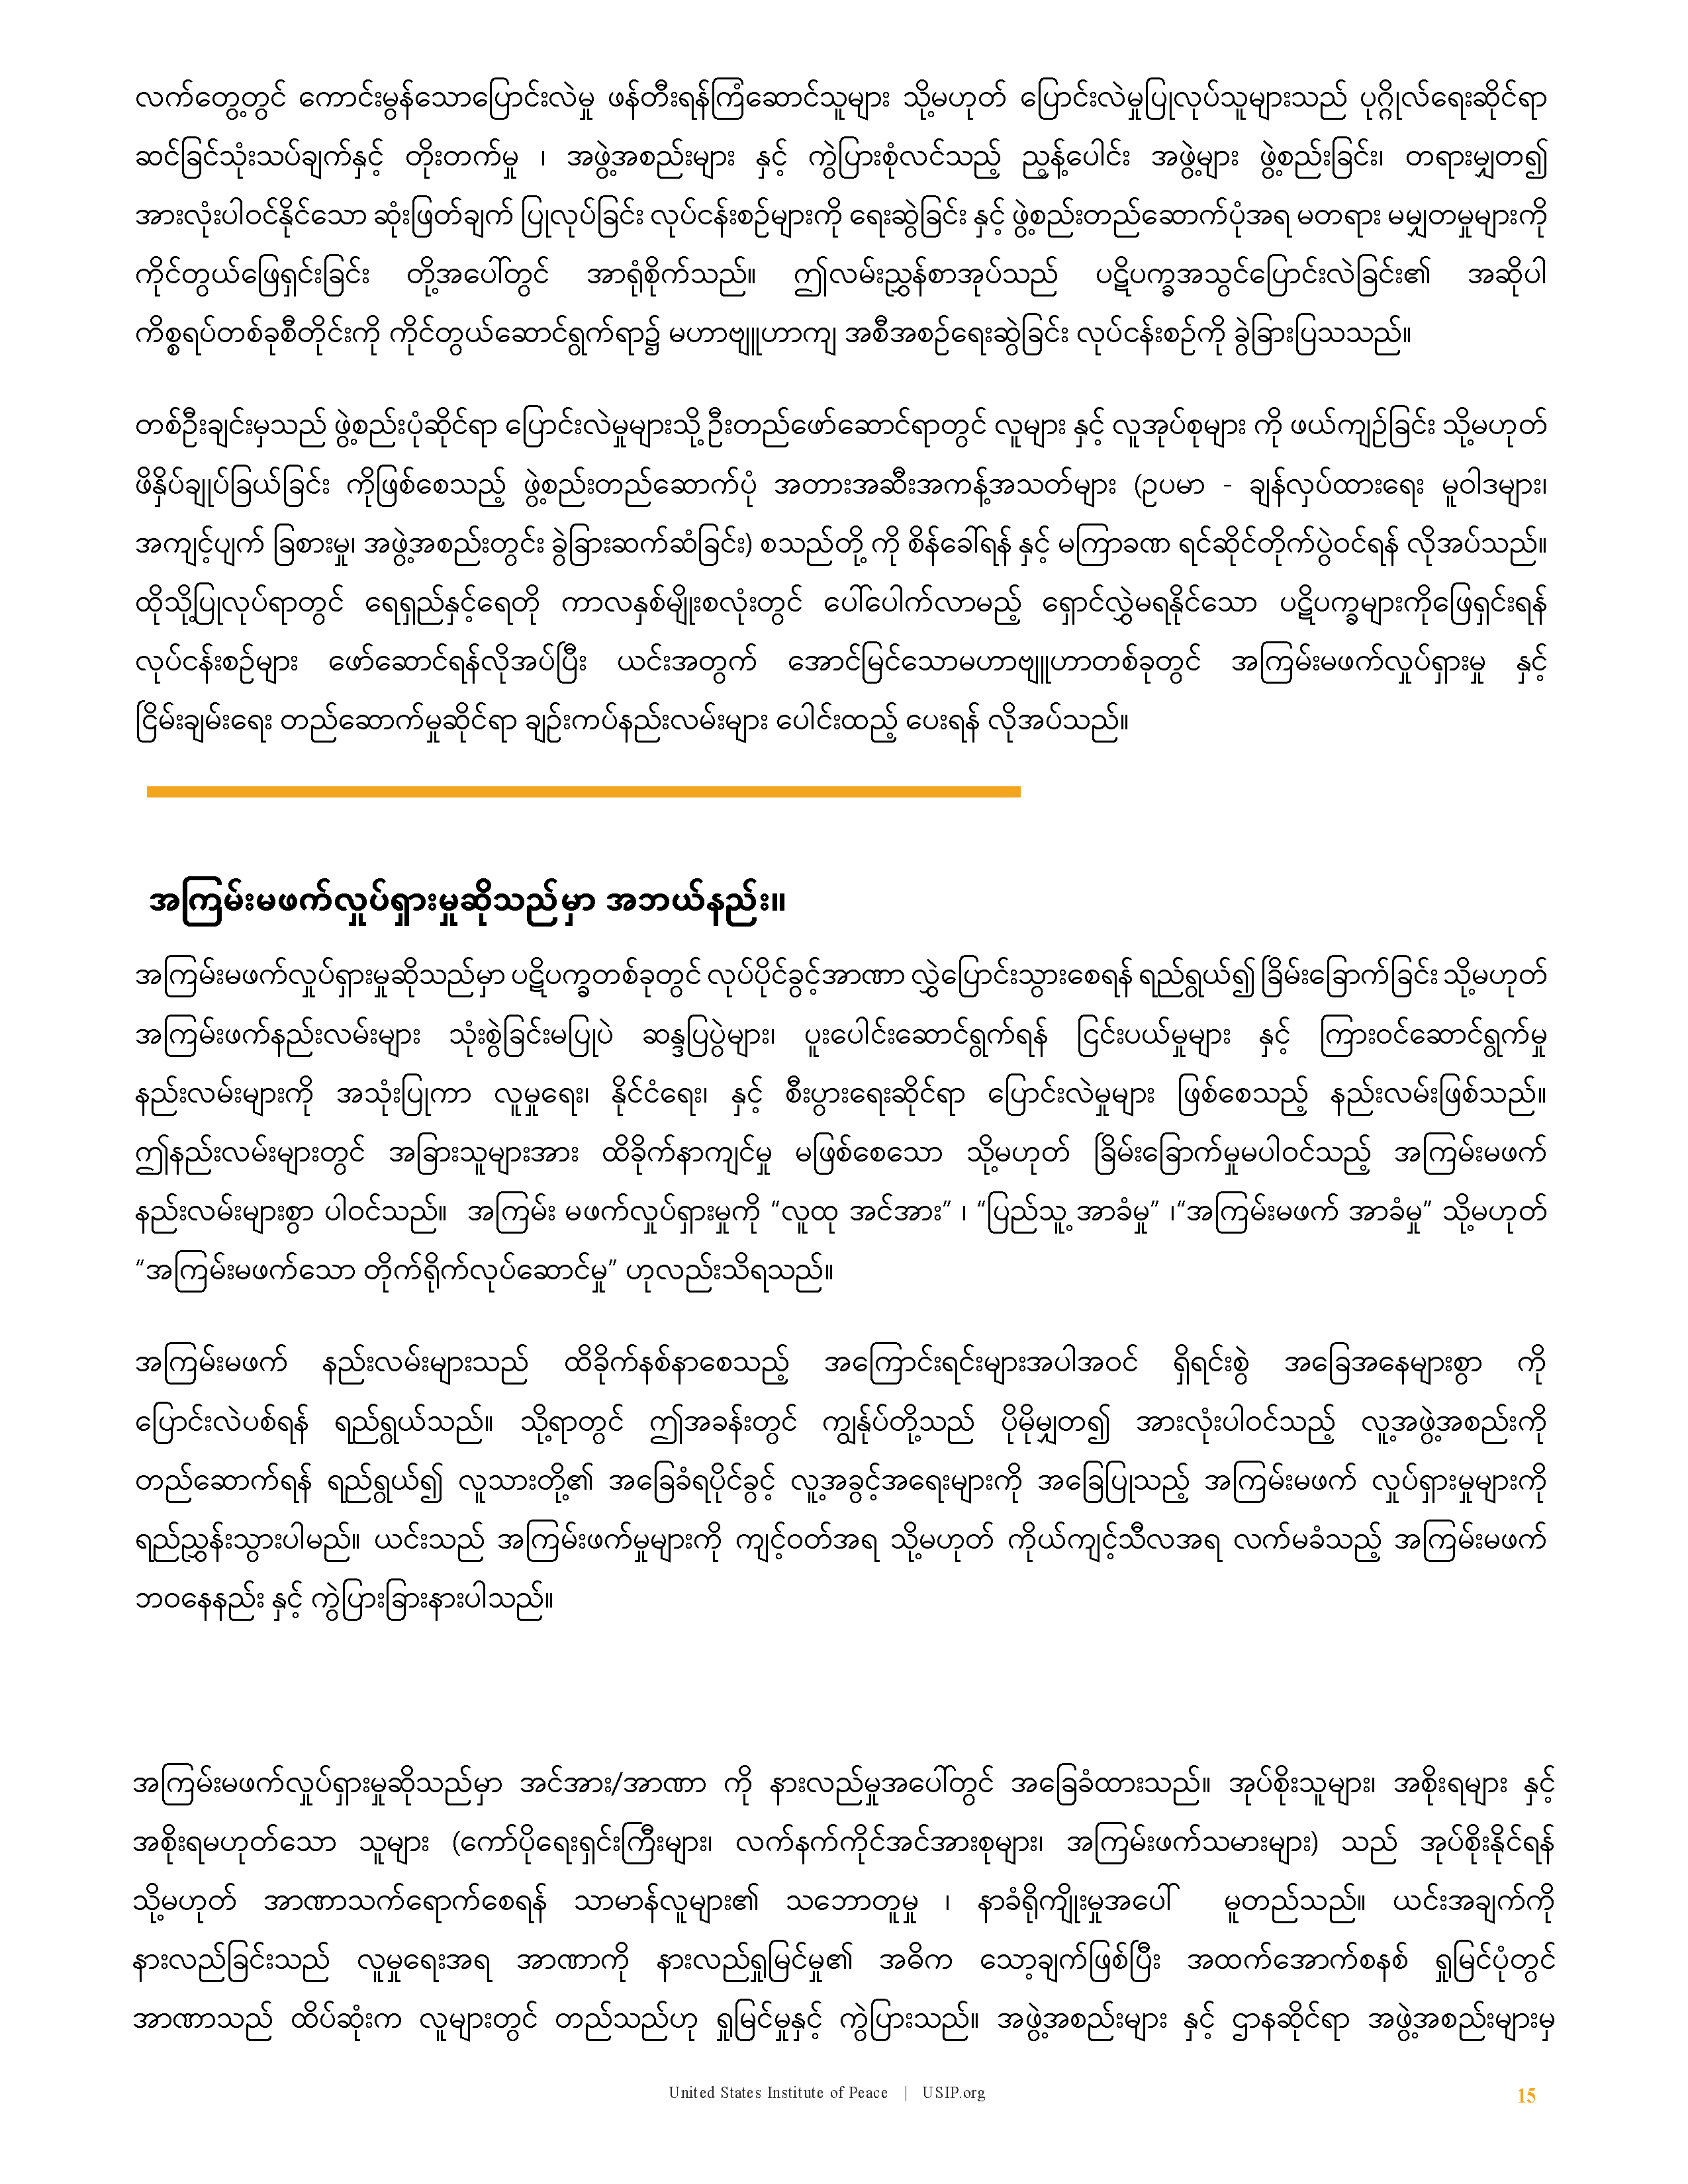 Strategic Nonviolent Action and Peacebuilding (SNAP) curriculum (Burmese)